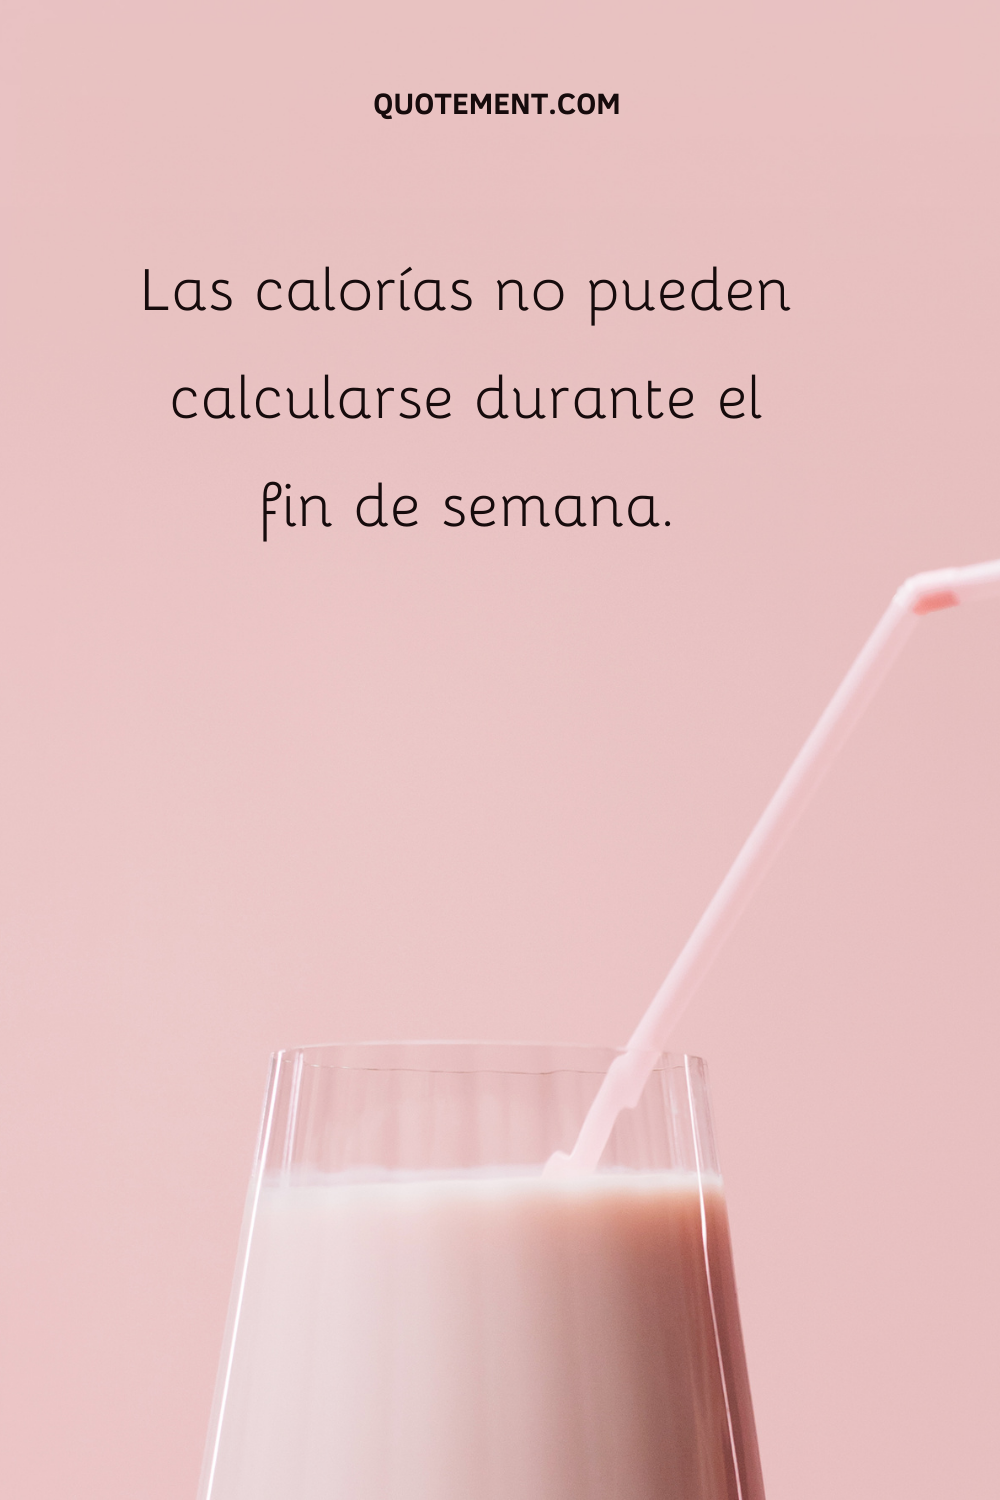 Las calorías no pueden calcularse durante el fin de semana.